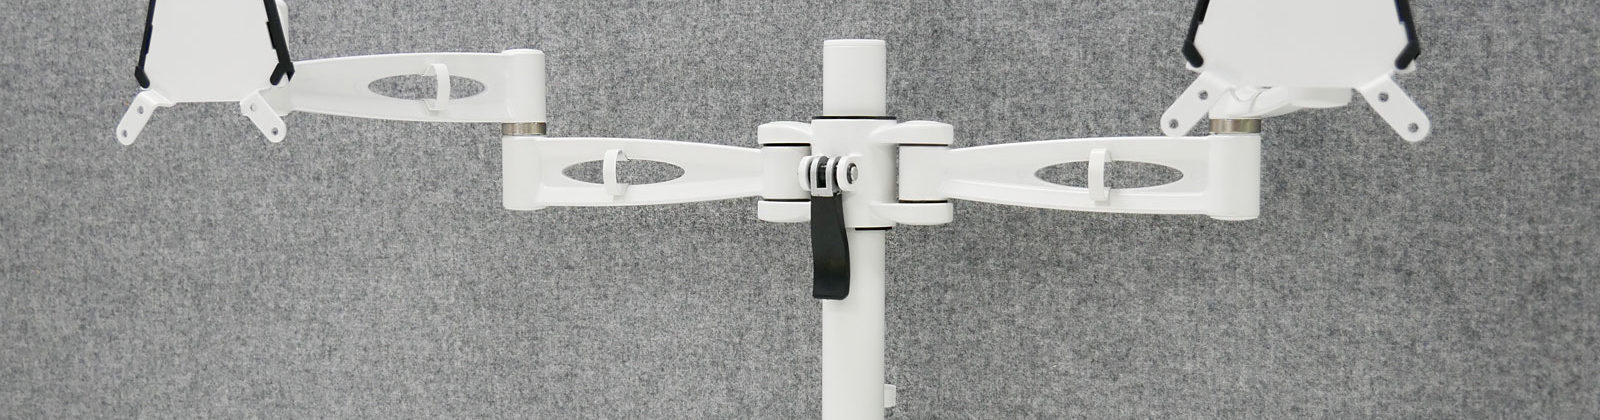 Kardo Pole-mounted Monitor Arms